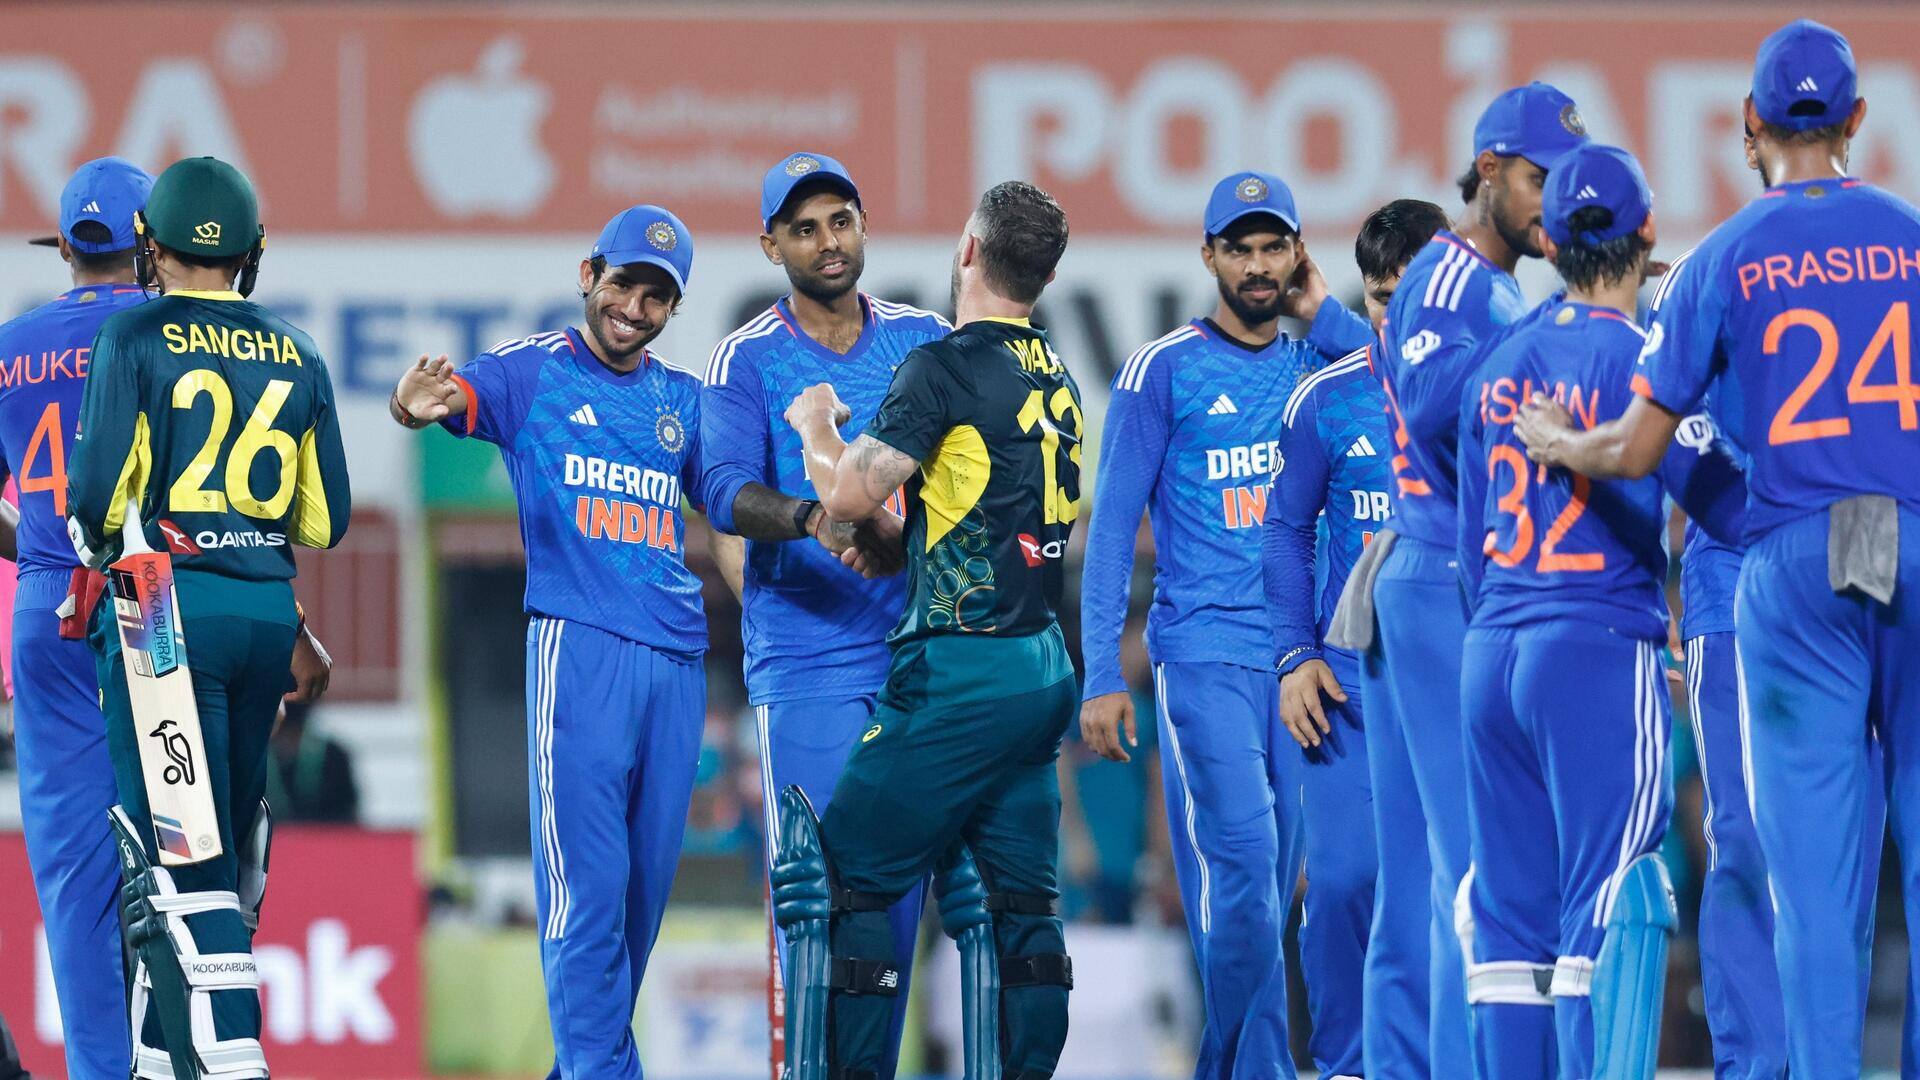 भारतीय टीम ने संयुक्त रूप से जीते सर्वाधिक टी-20 अंतरराष्ट्रीय मुकाबले, जानिए अन्य देशों के आंकड़े